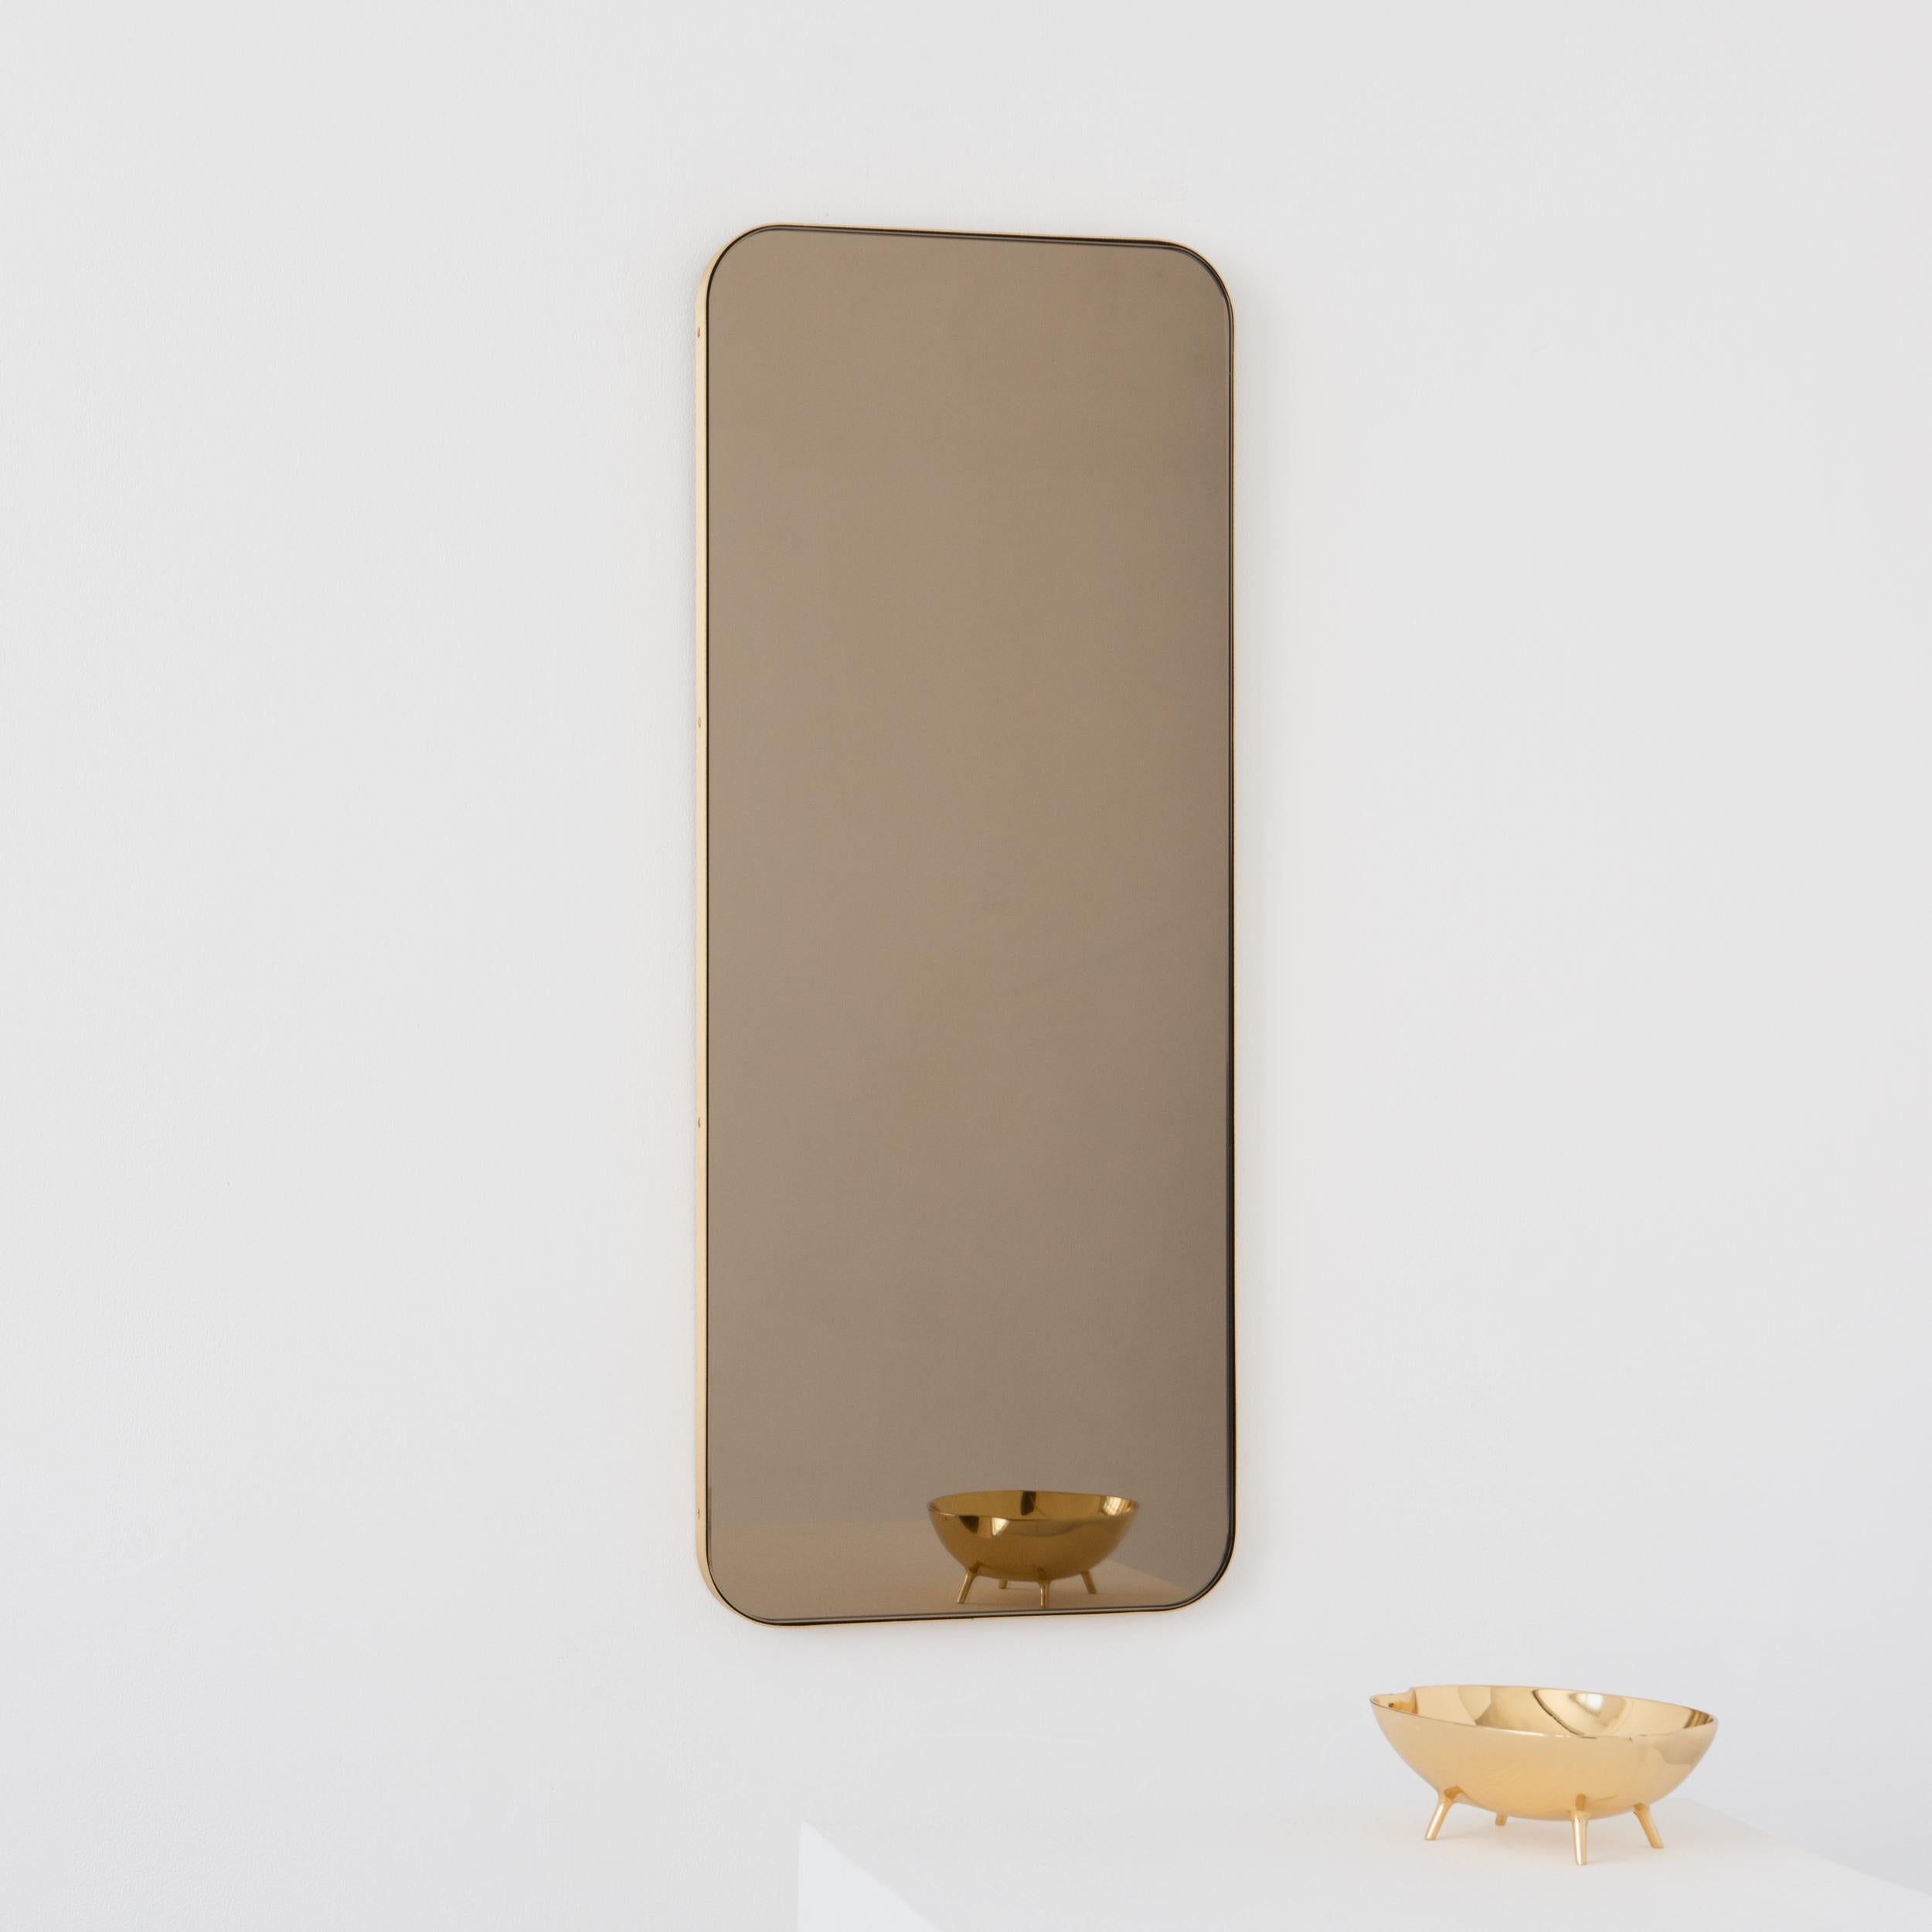 Moderner, bronzefarben getönter, rechteckiger Spiegel mit einem eleganten Rahmen aus gebürstetem Messing. Teil der charmanten Quadris Kollektion, entworfen und handgefertigt in London, UK. 

Unsere Spiegel sind mit einem integrierten französischen